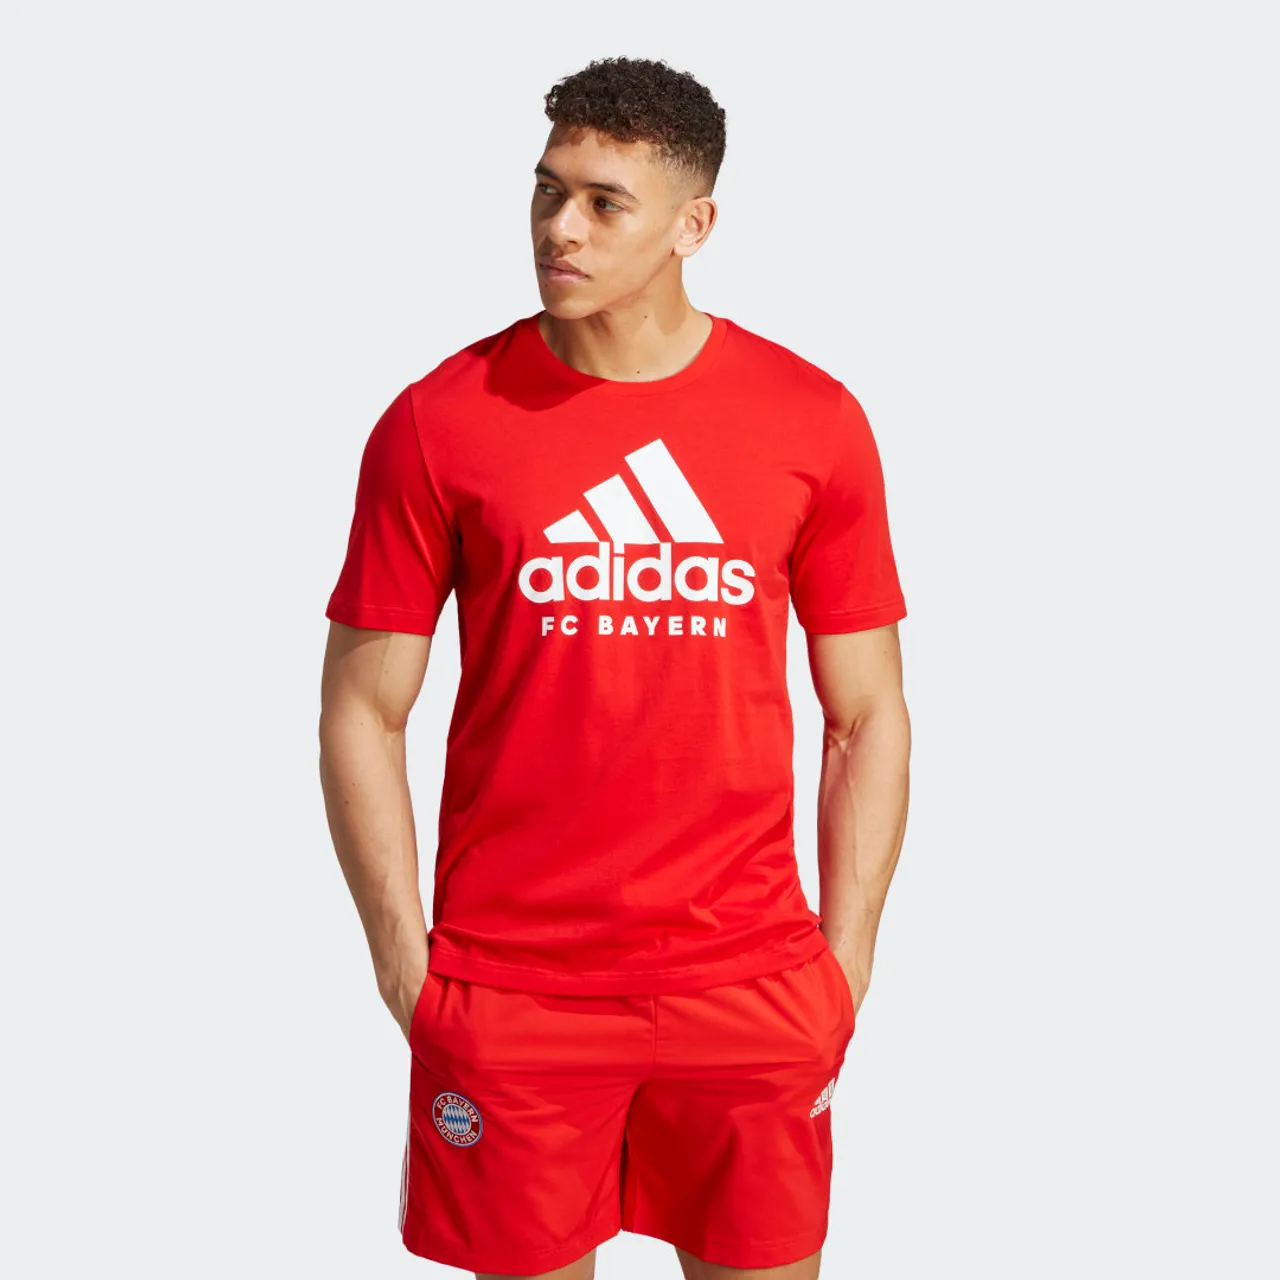 FC Bayern DNA Graphic T-Shirt